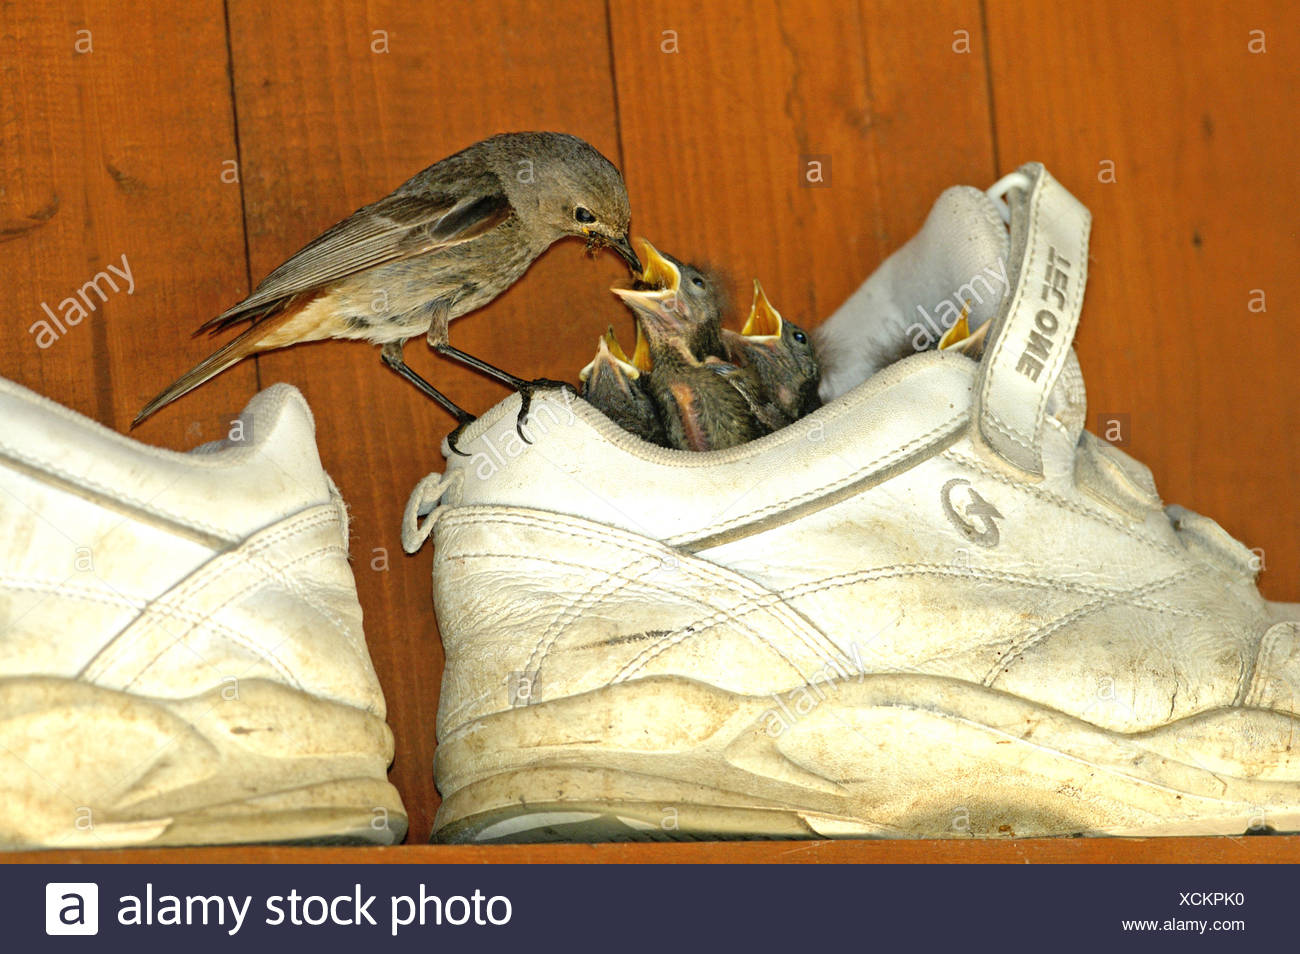 birds nest shoes